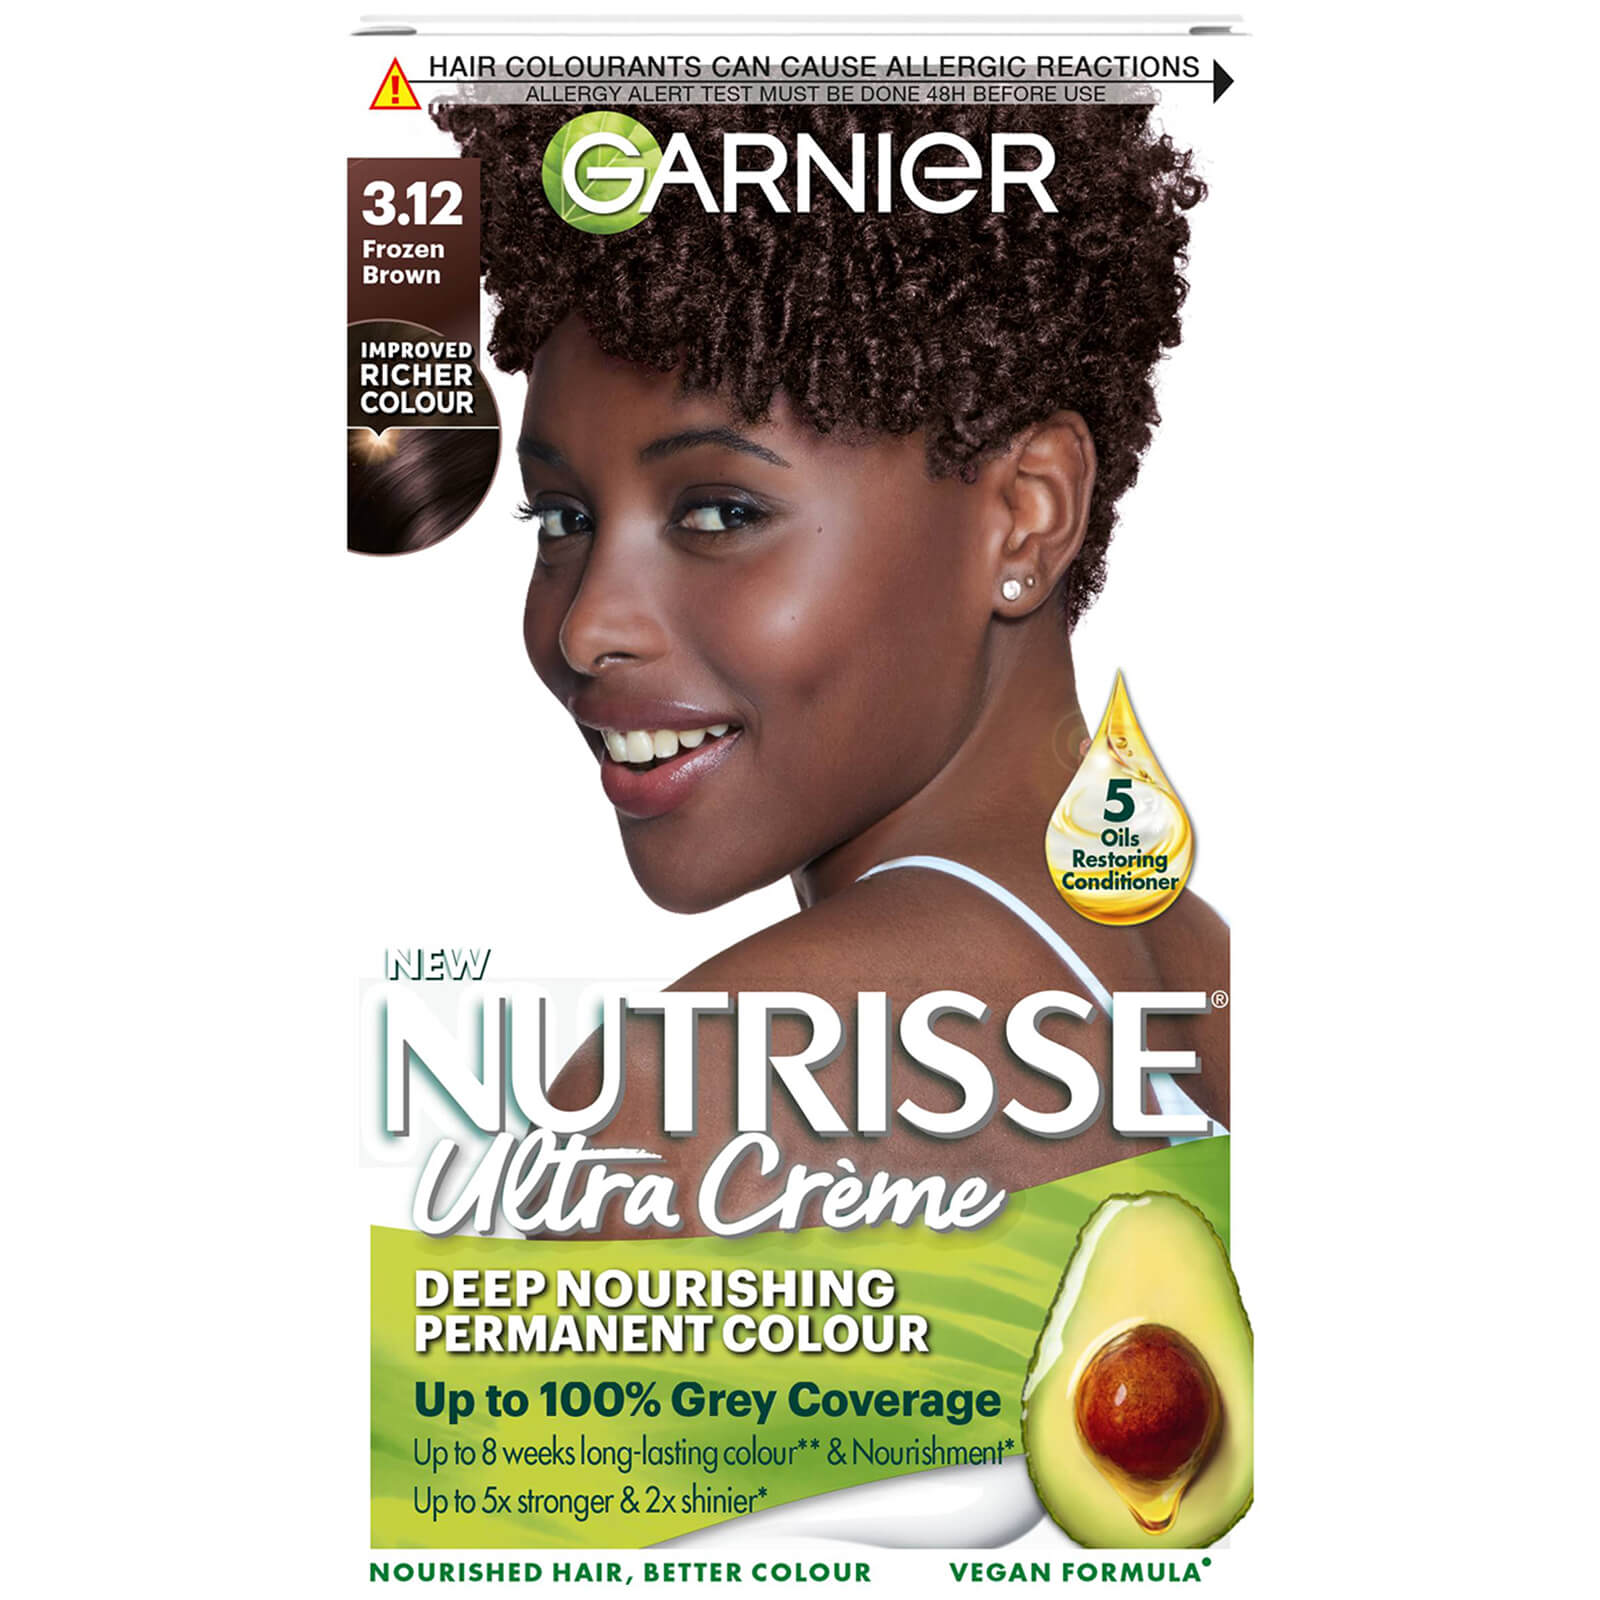 Garnier Nutrisse Permanent Hair Dye (Various Shades) - 3.12 Frozen Brown